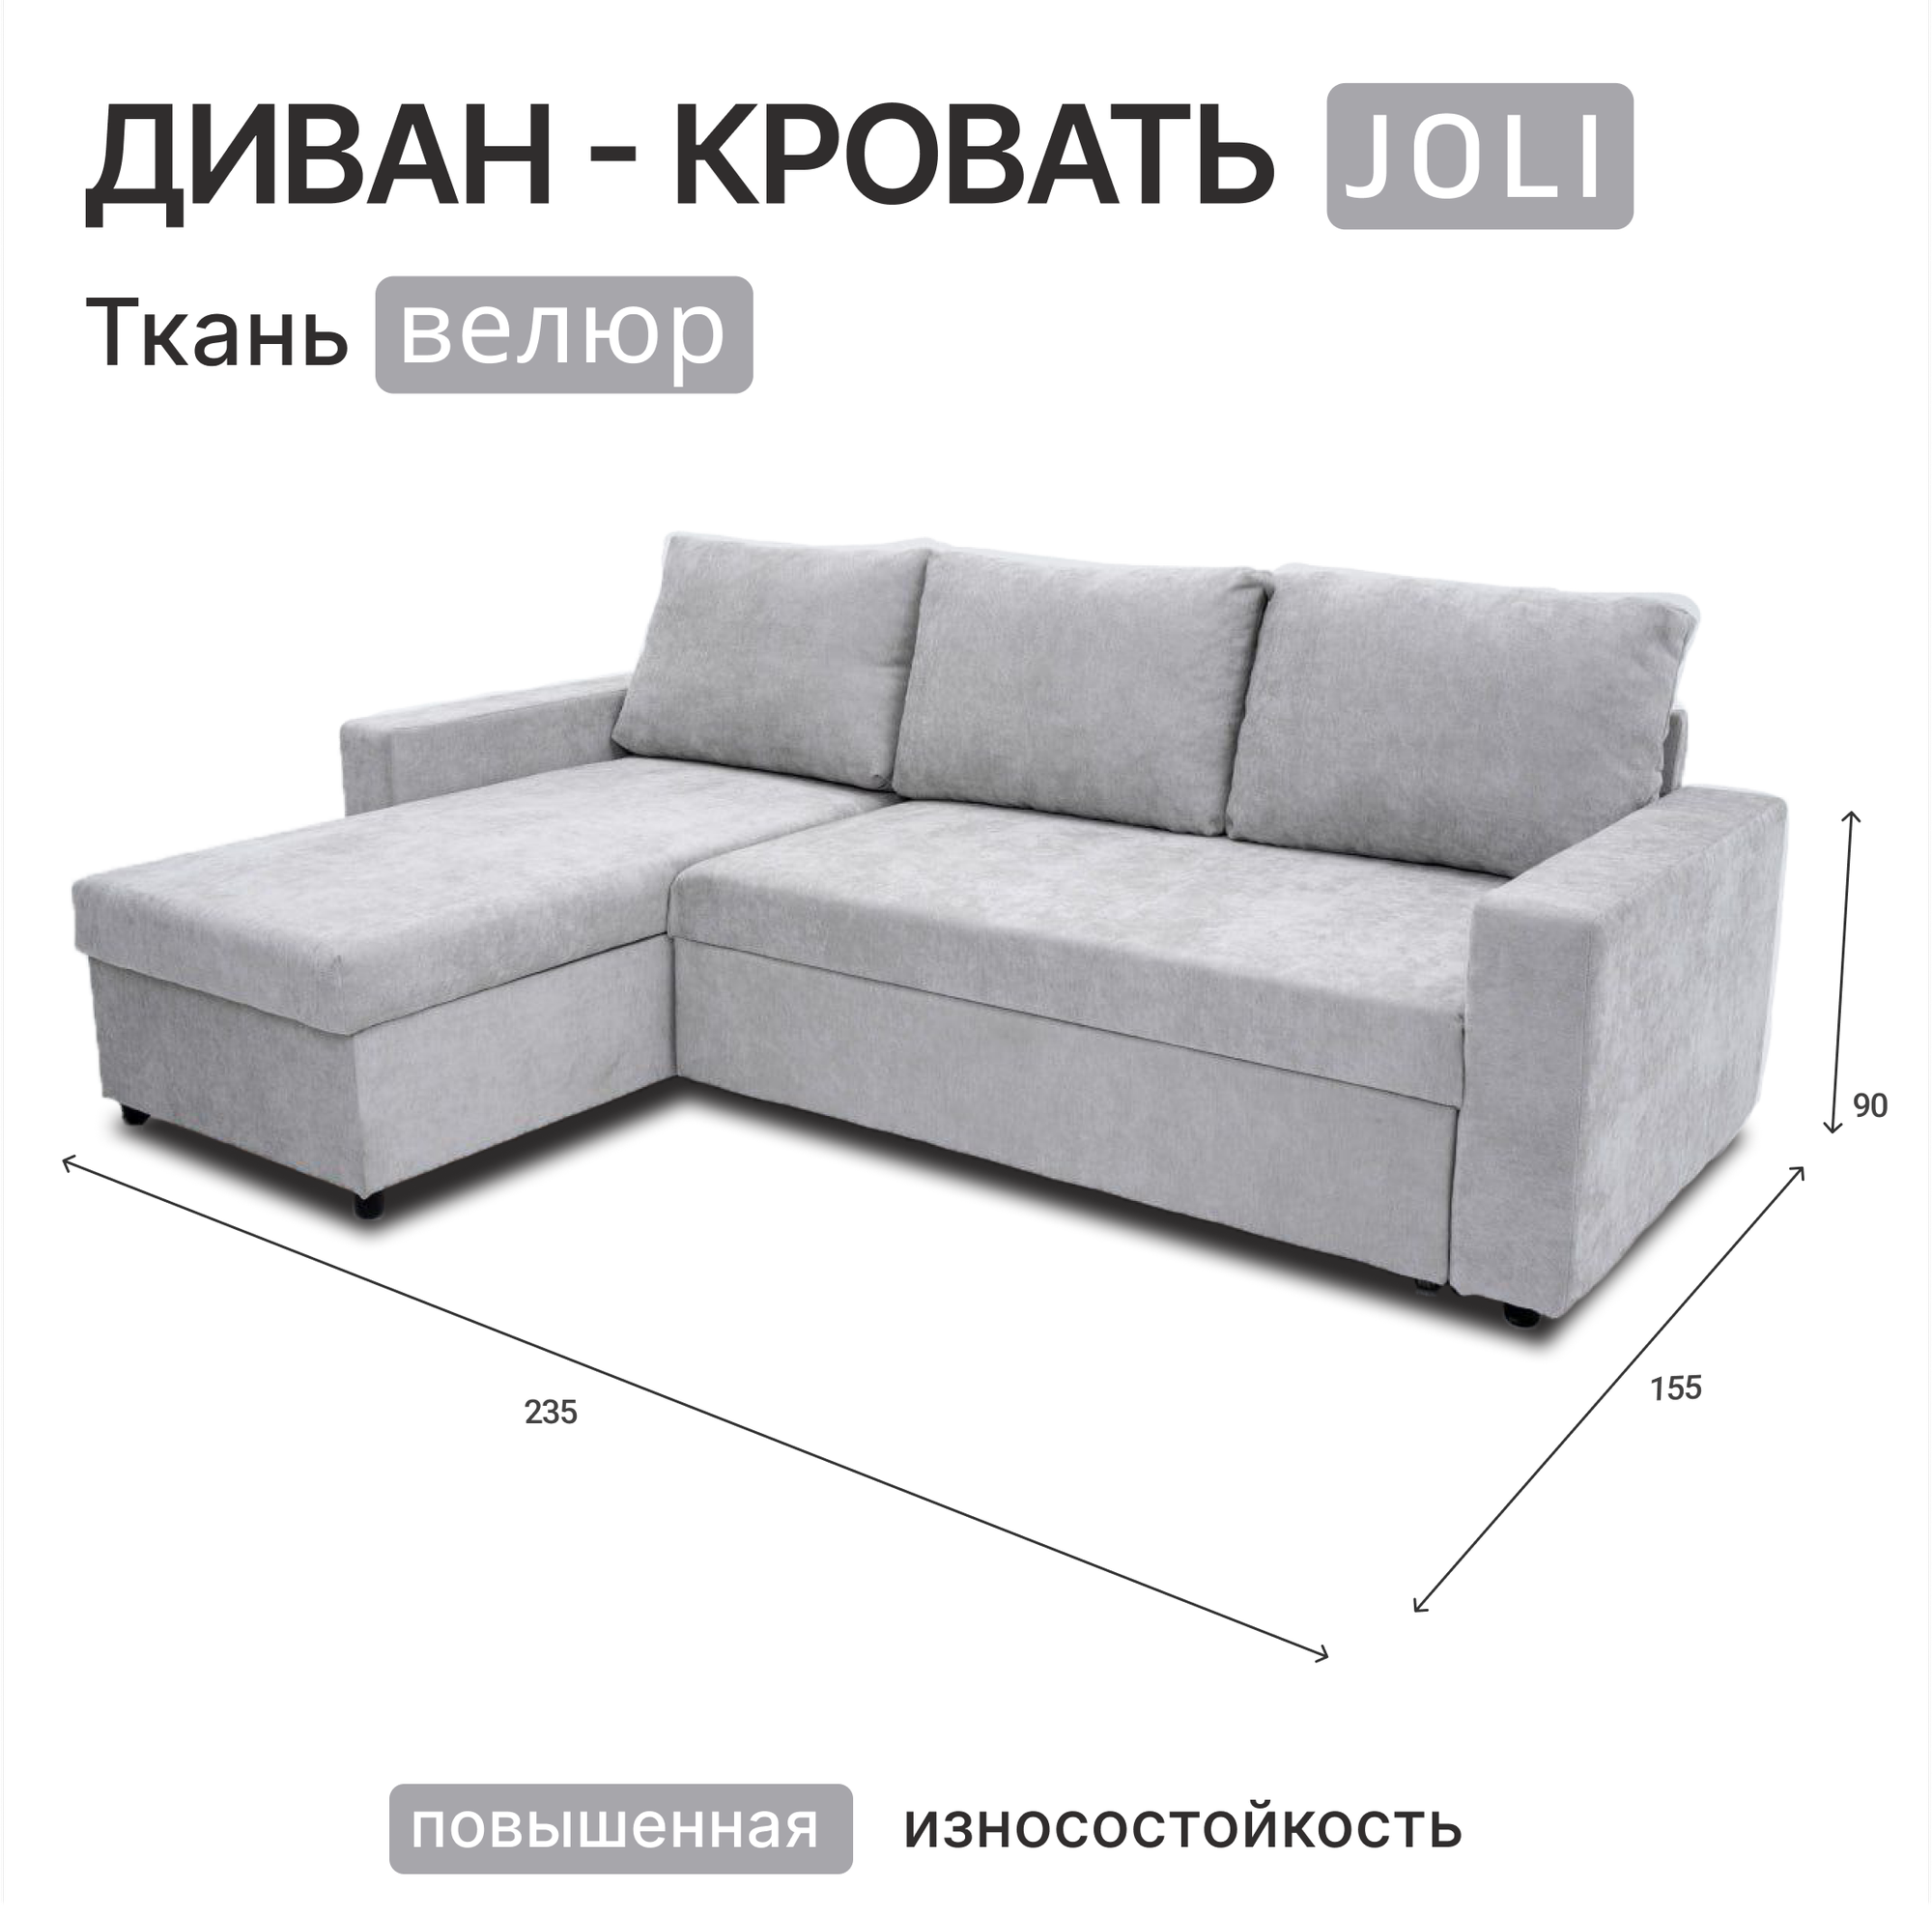 Угловой диван-кровать "Joli" Серый. Легко чистить. Угол универсальный.